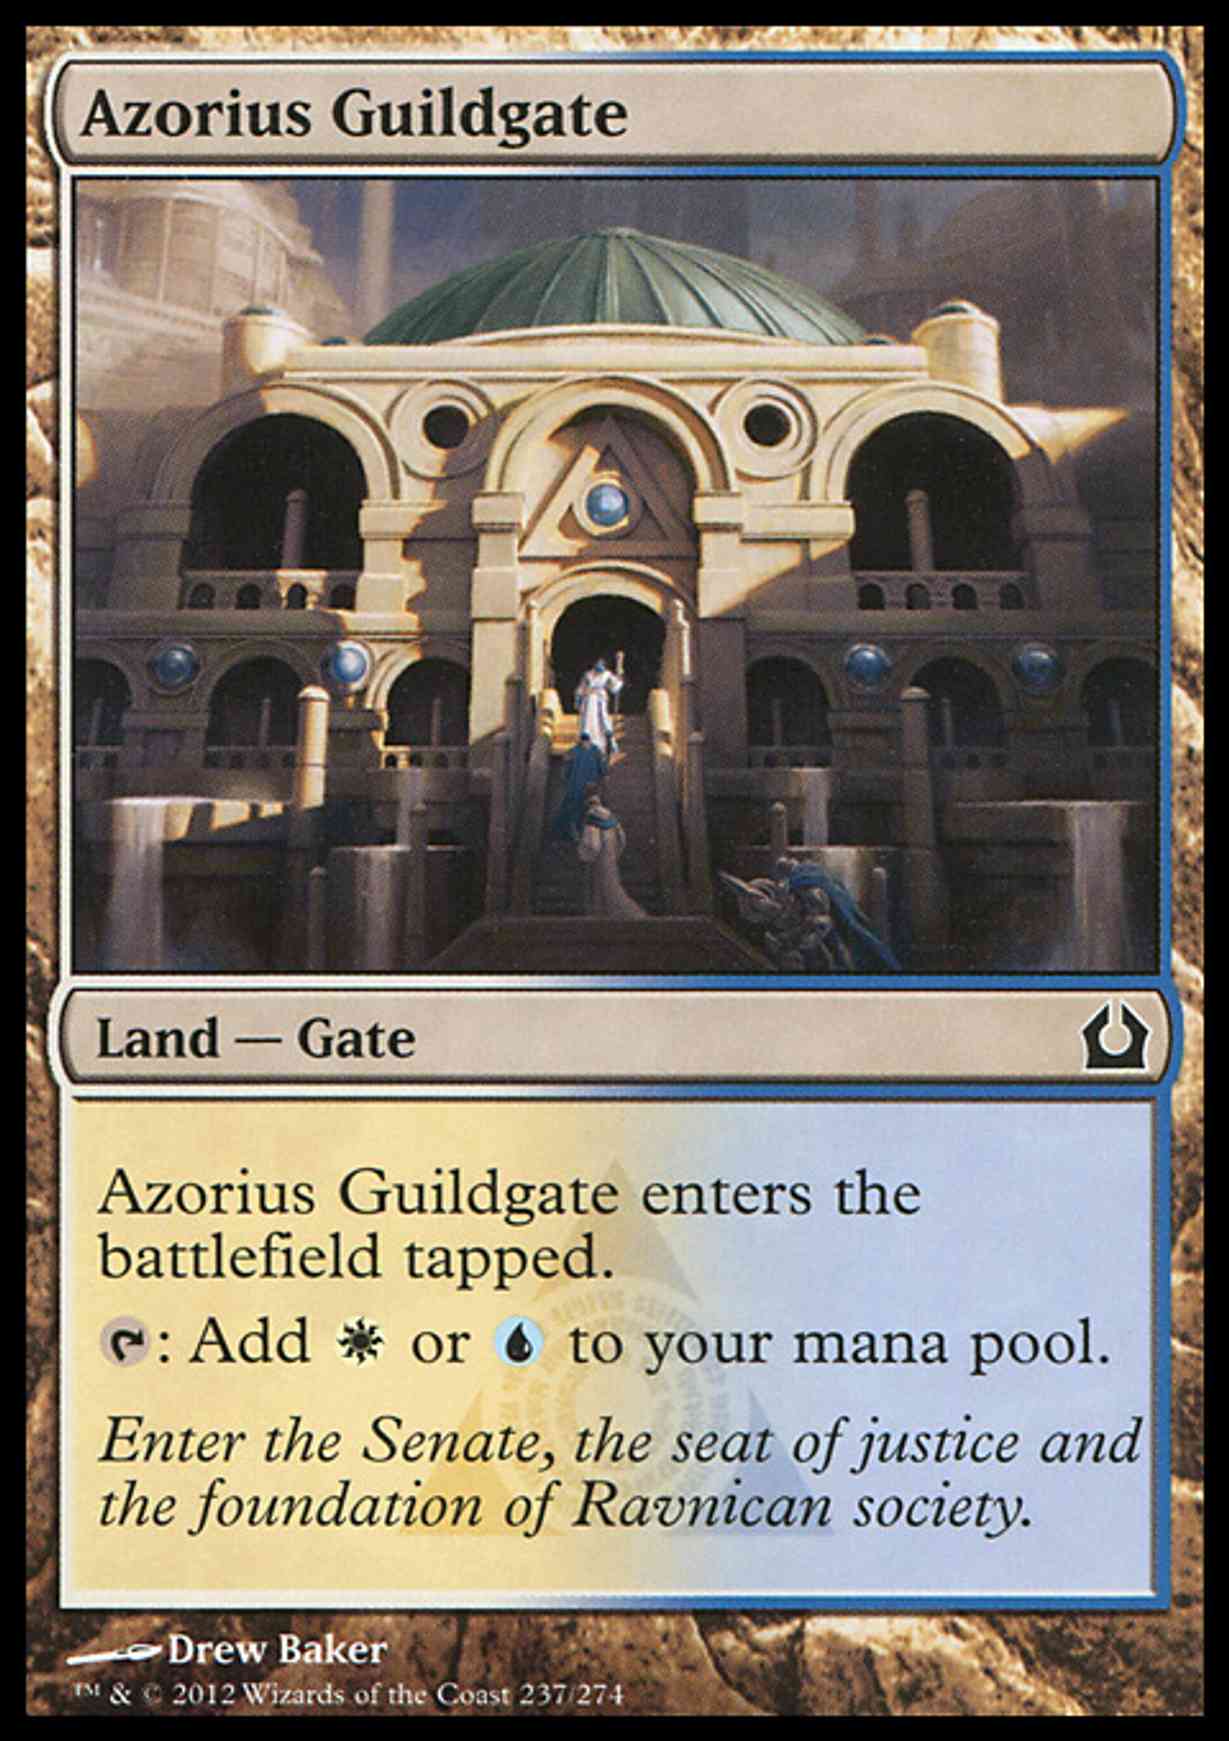 Azorius Guildgate magic card front